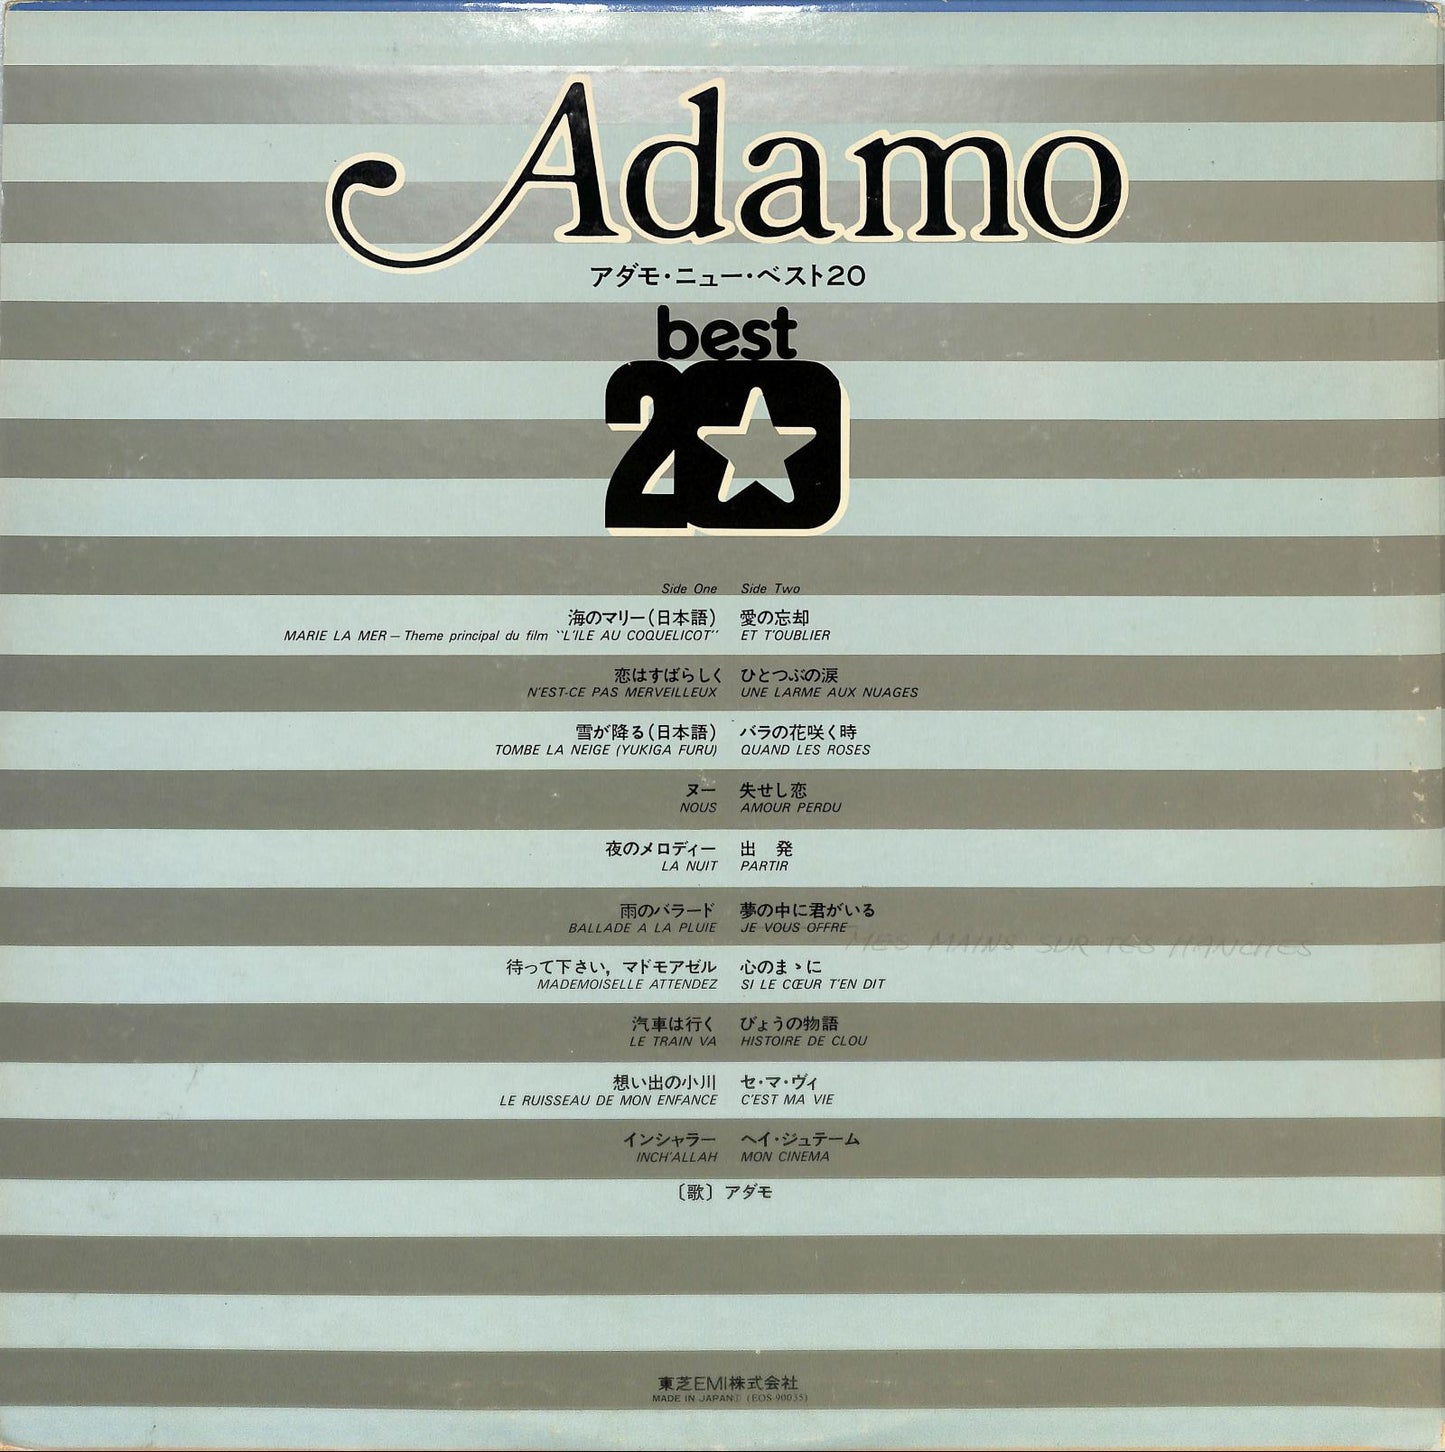 ADAMO - Adamo Best 20